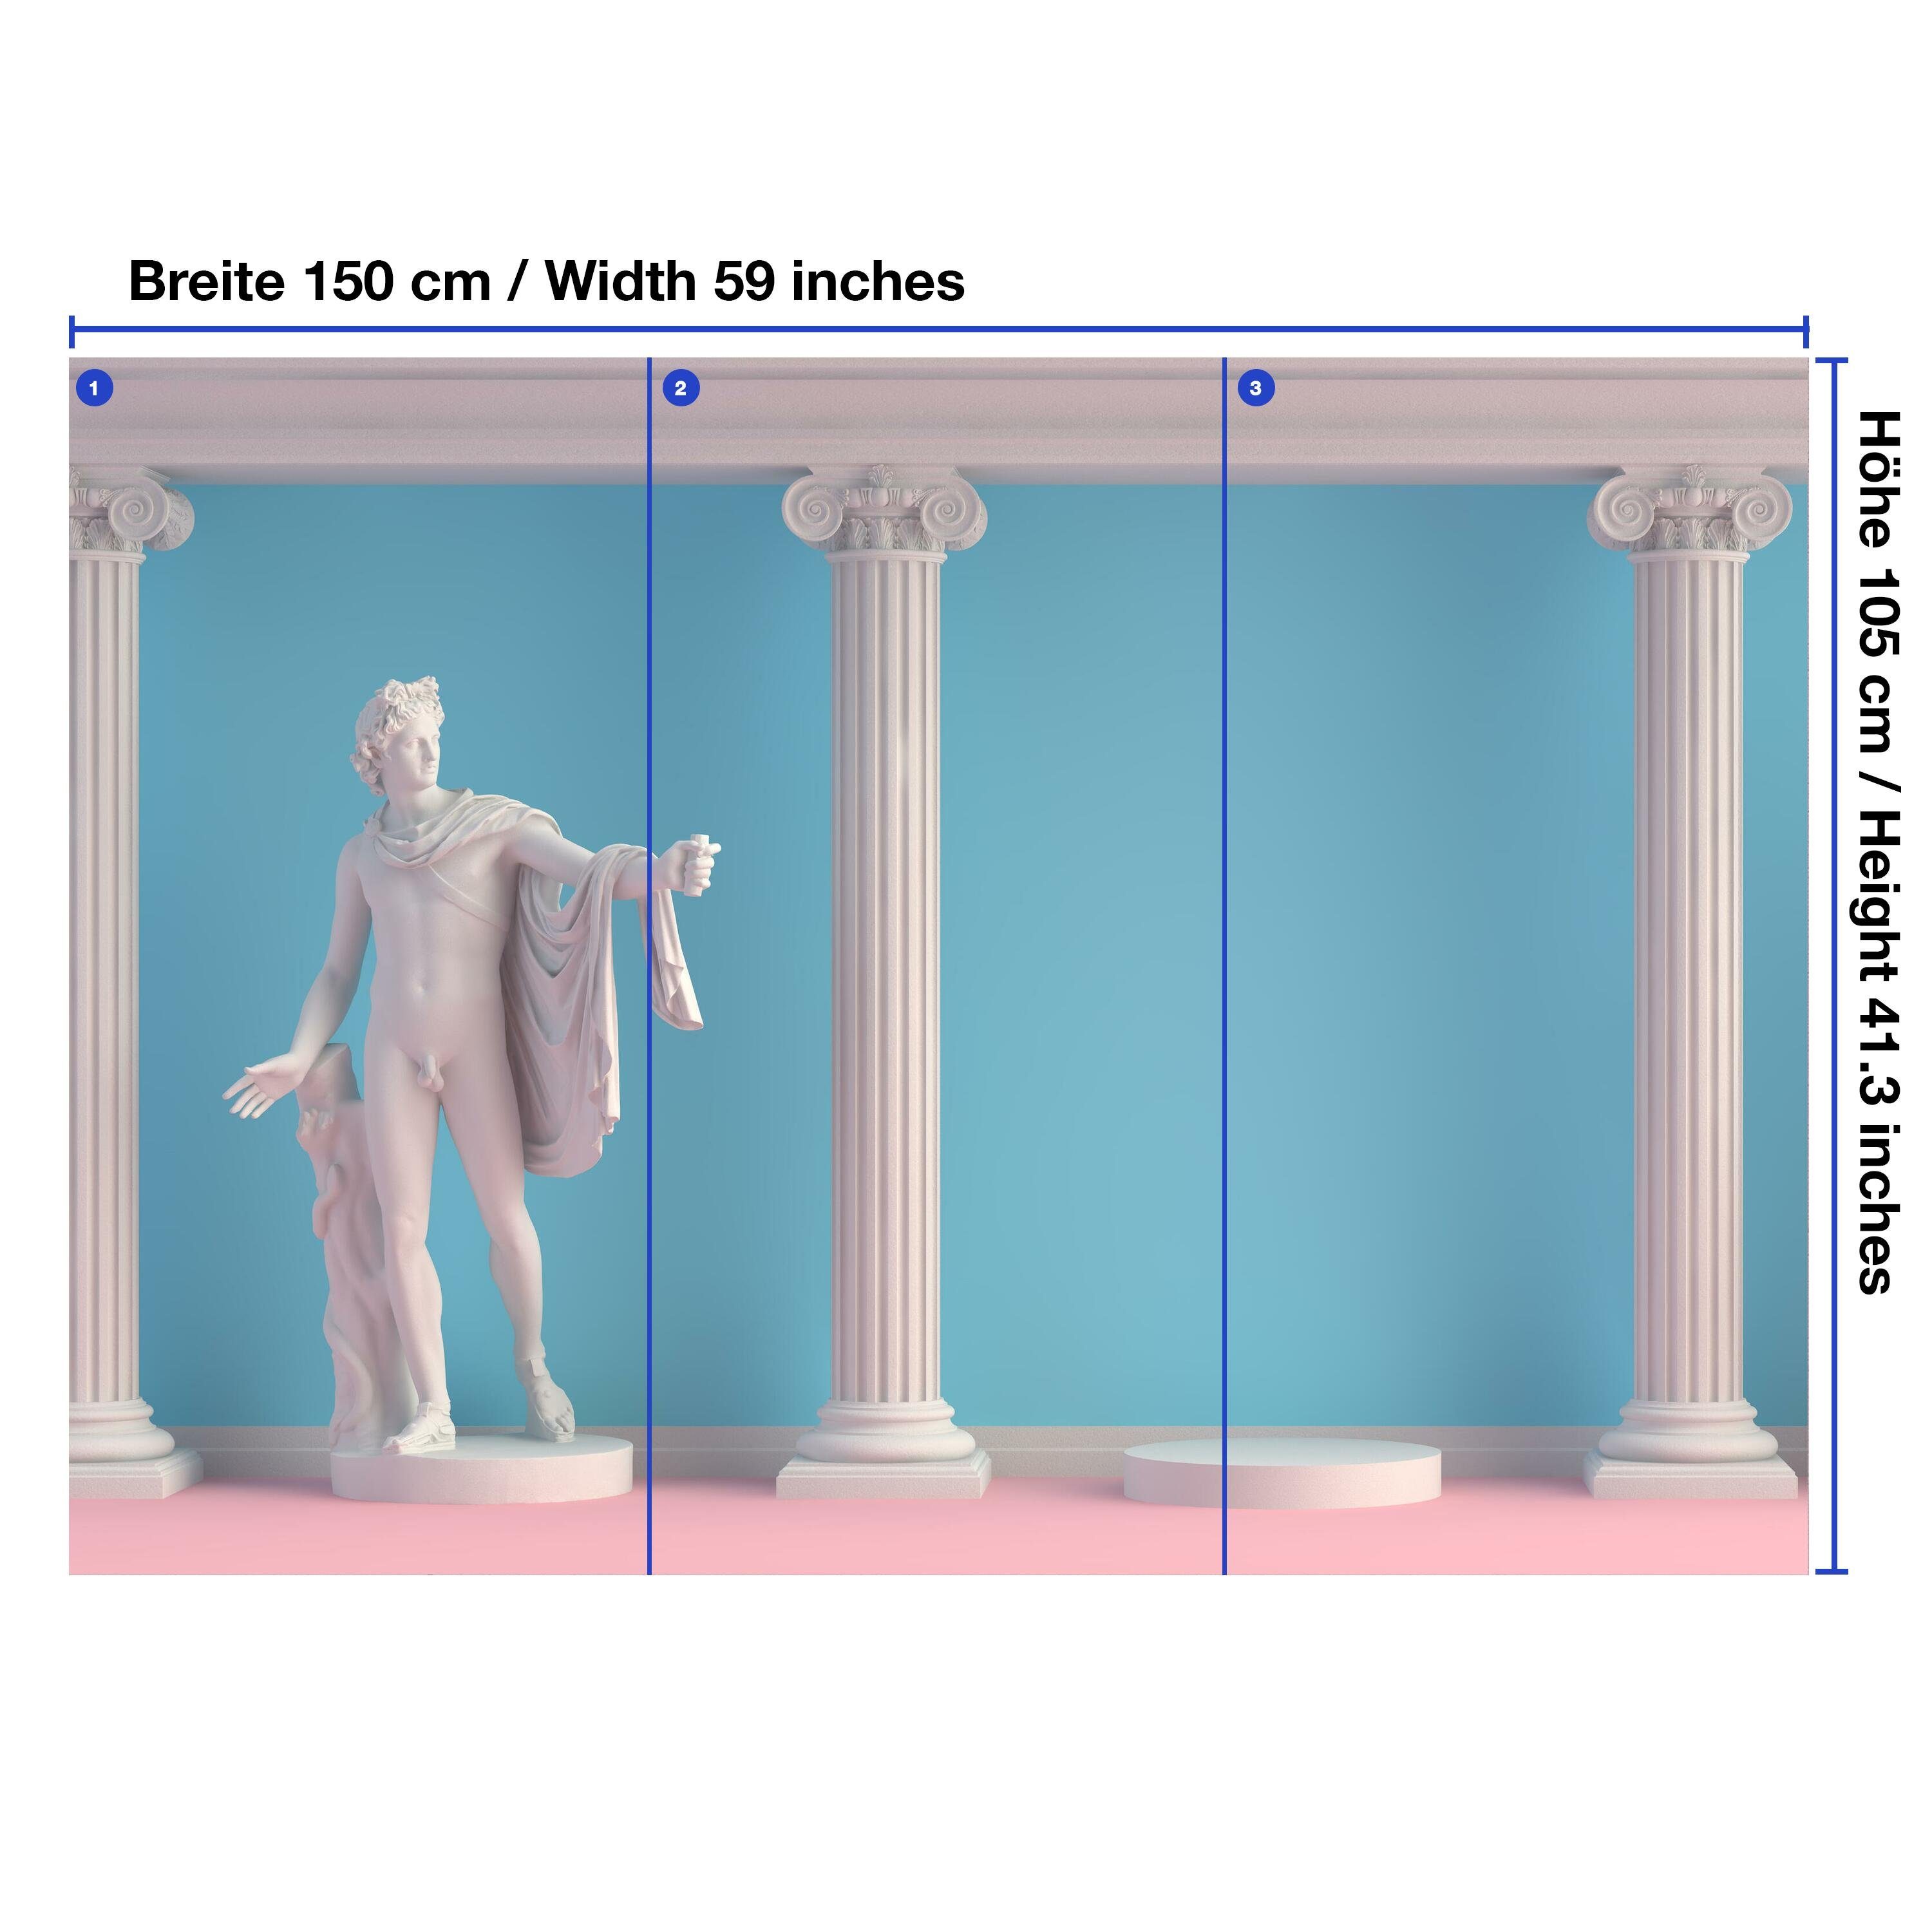 wandmotiv24 Fototapete Vliestapete Griechische mit Motivtapete, Wandtapete, glatt, Säulen, Statue matt